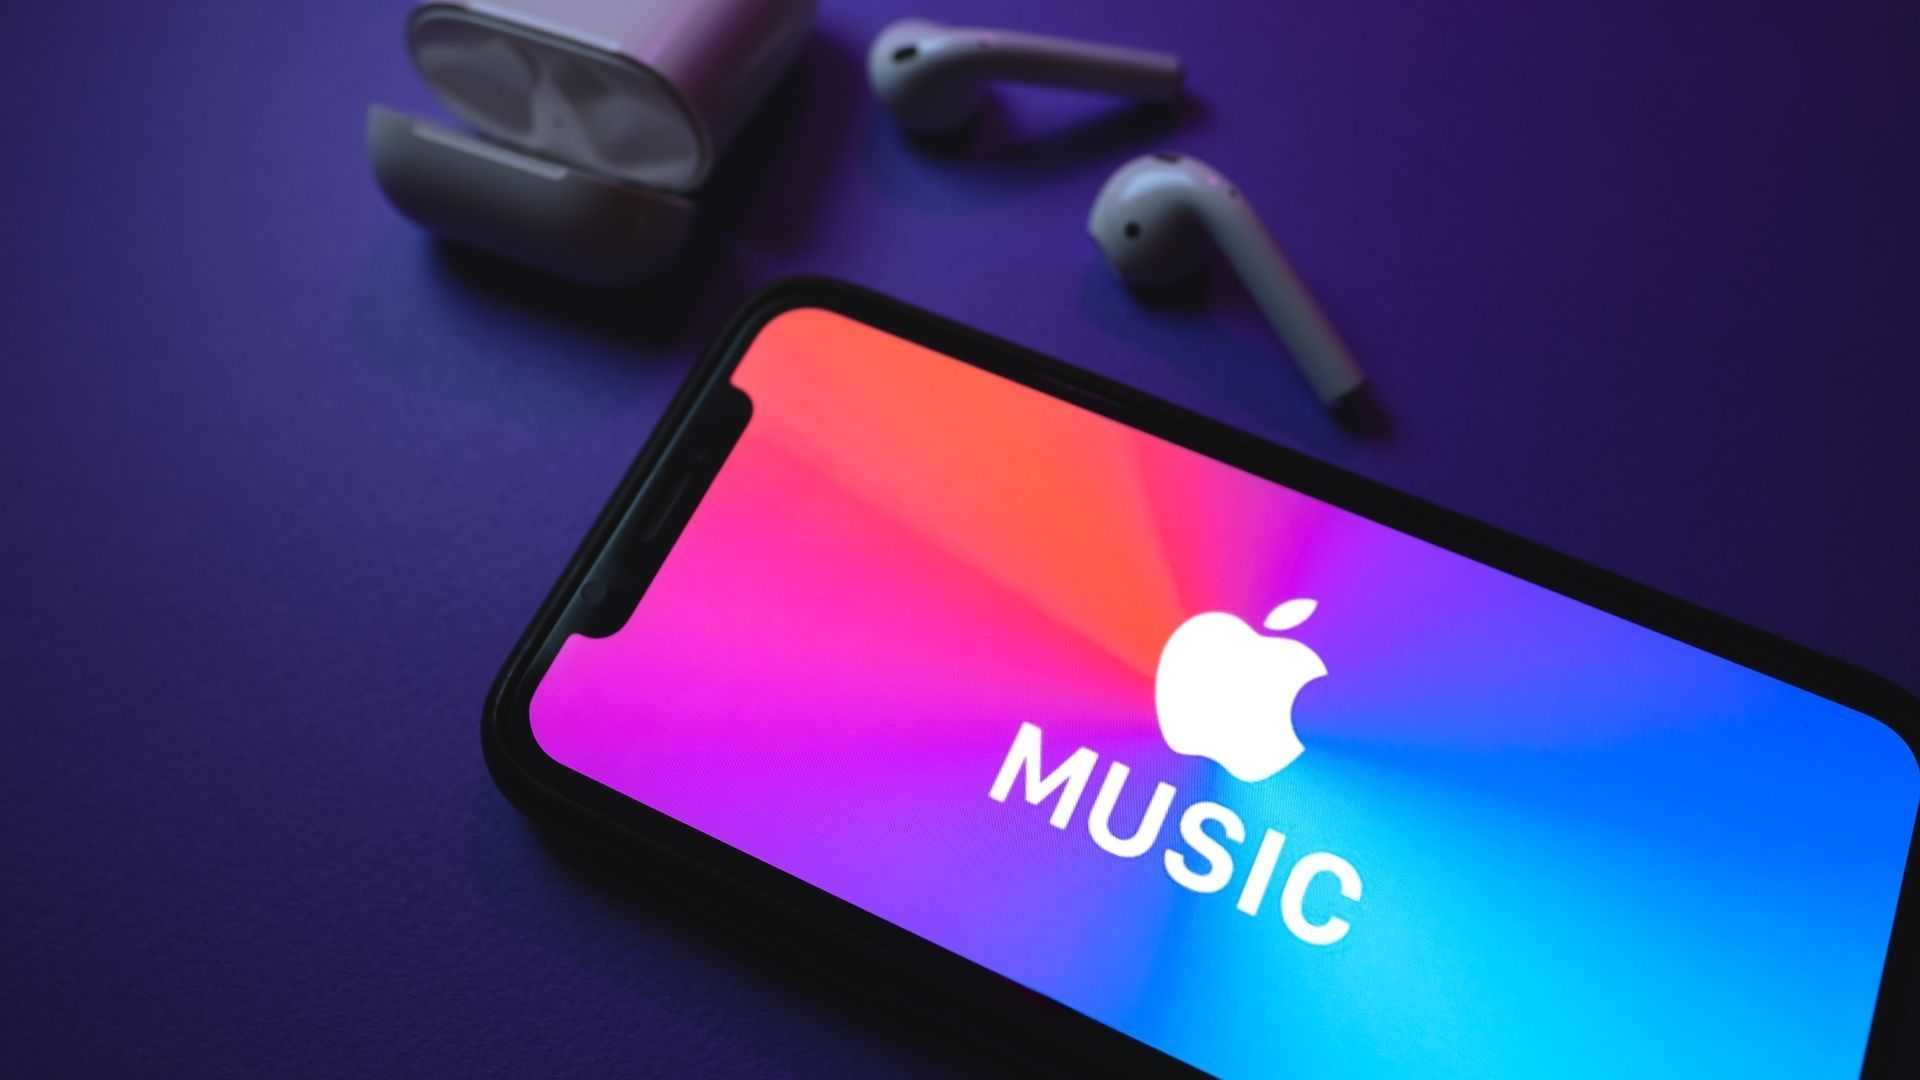 Saiba como baixar música no celular com o Apple Music! (Foto: Nikkmeel / Shutterstock.com)